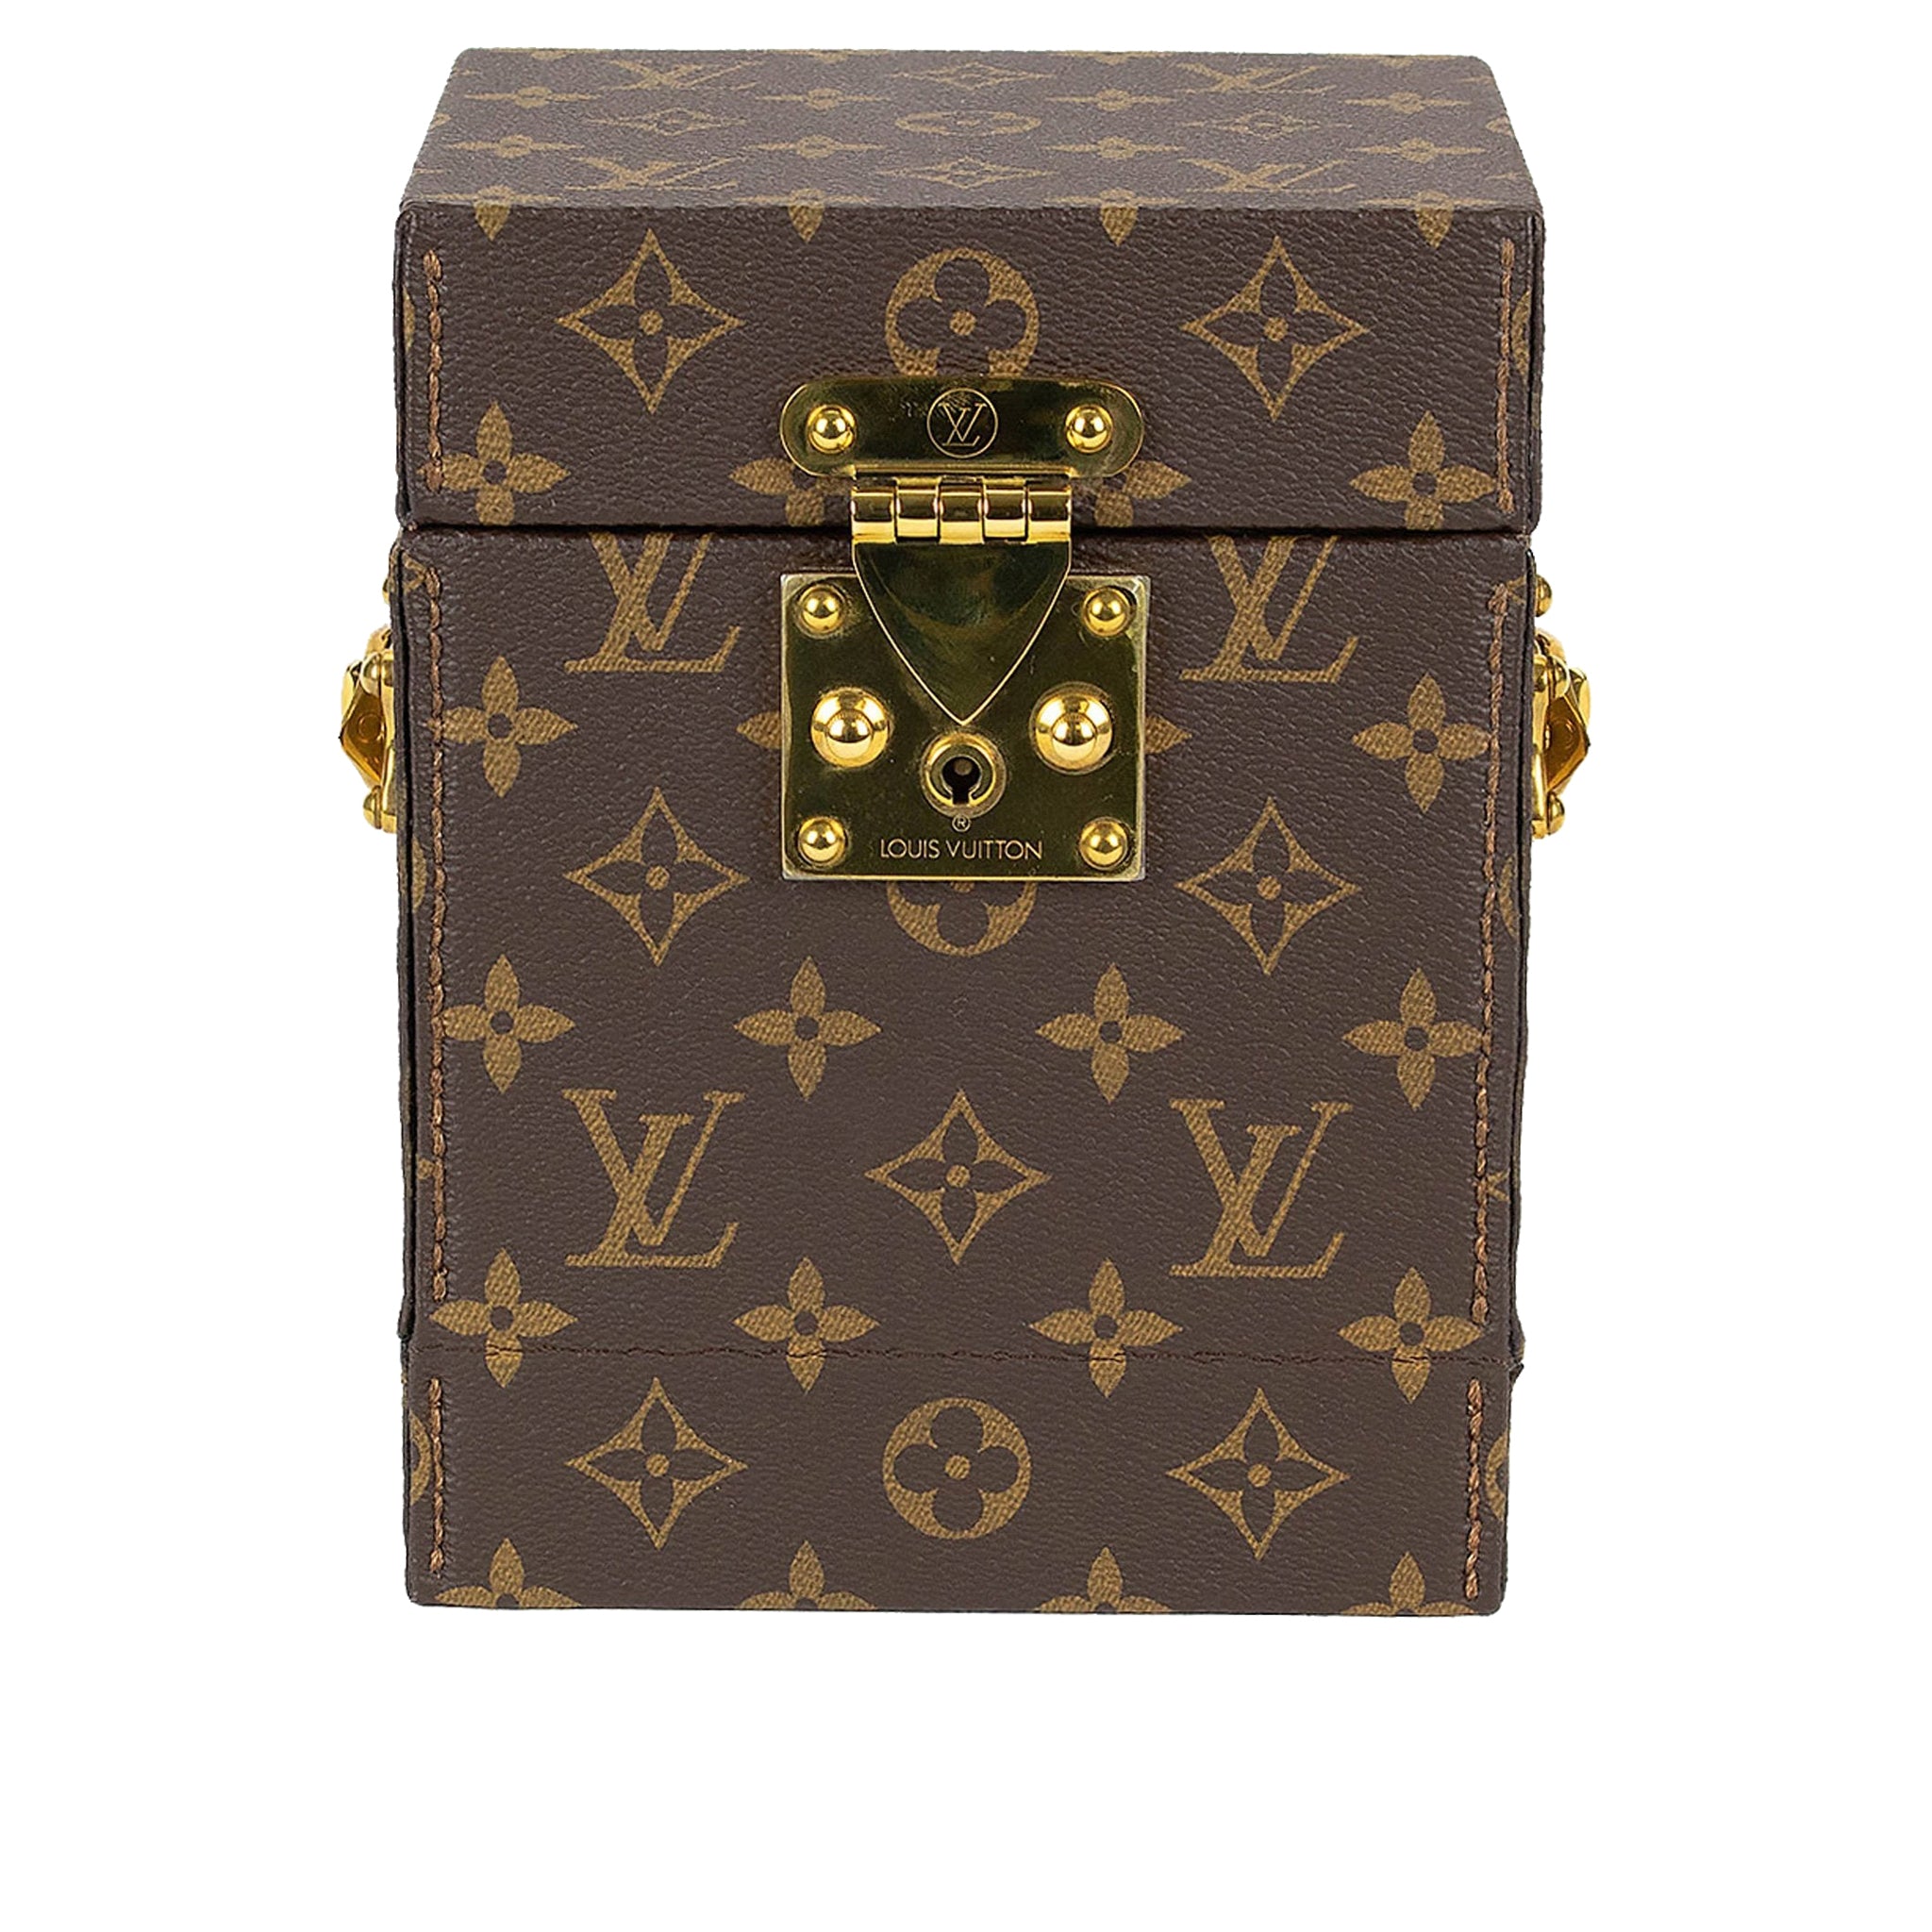 image of Louis Vuitton Monogram Brown Watch Box